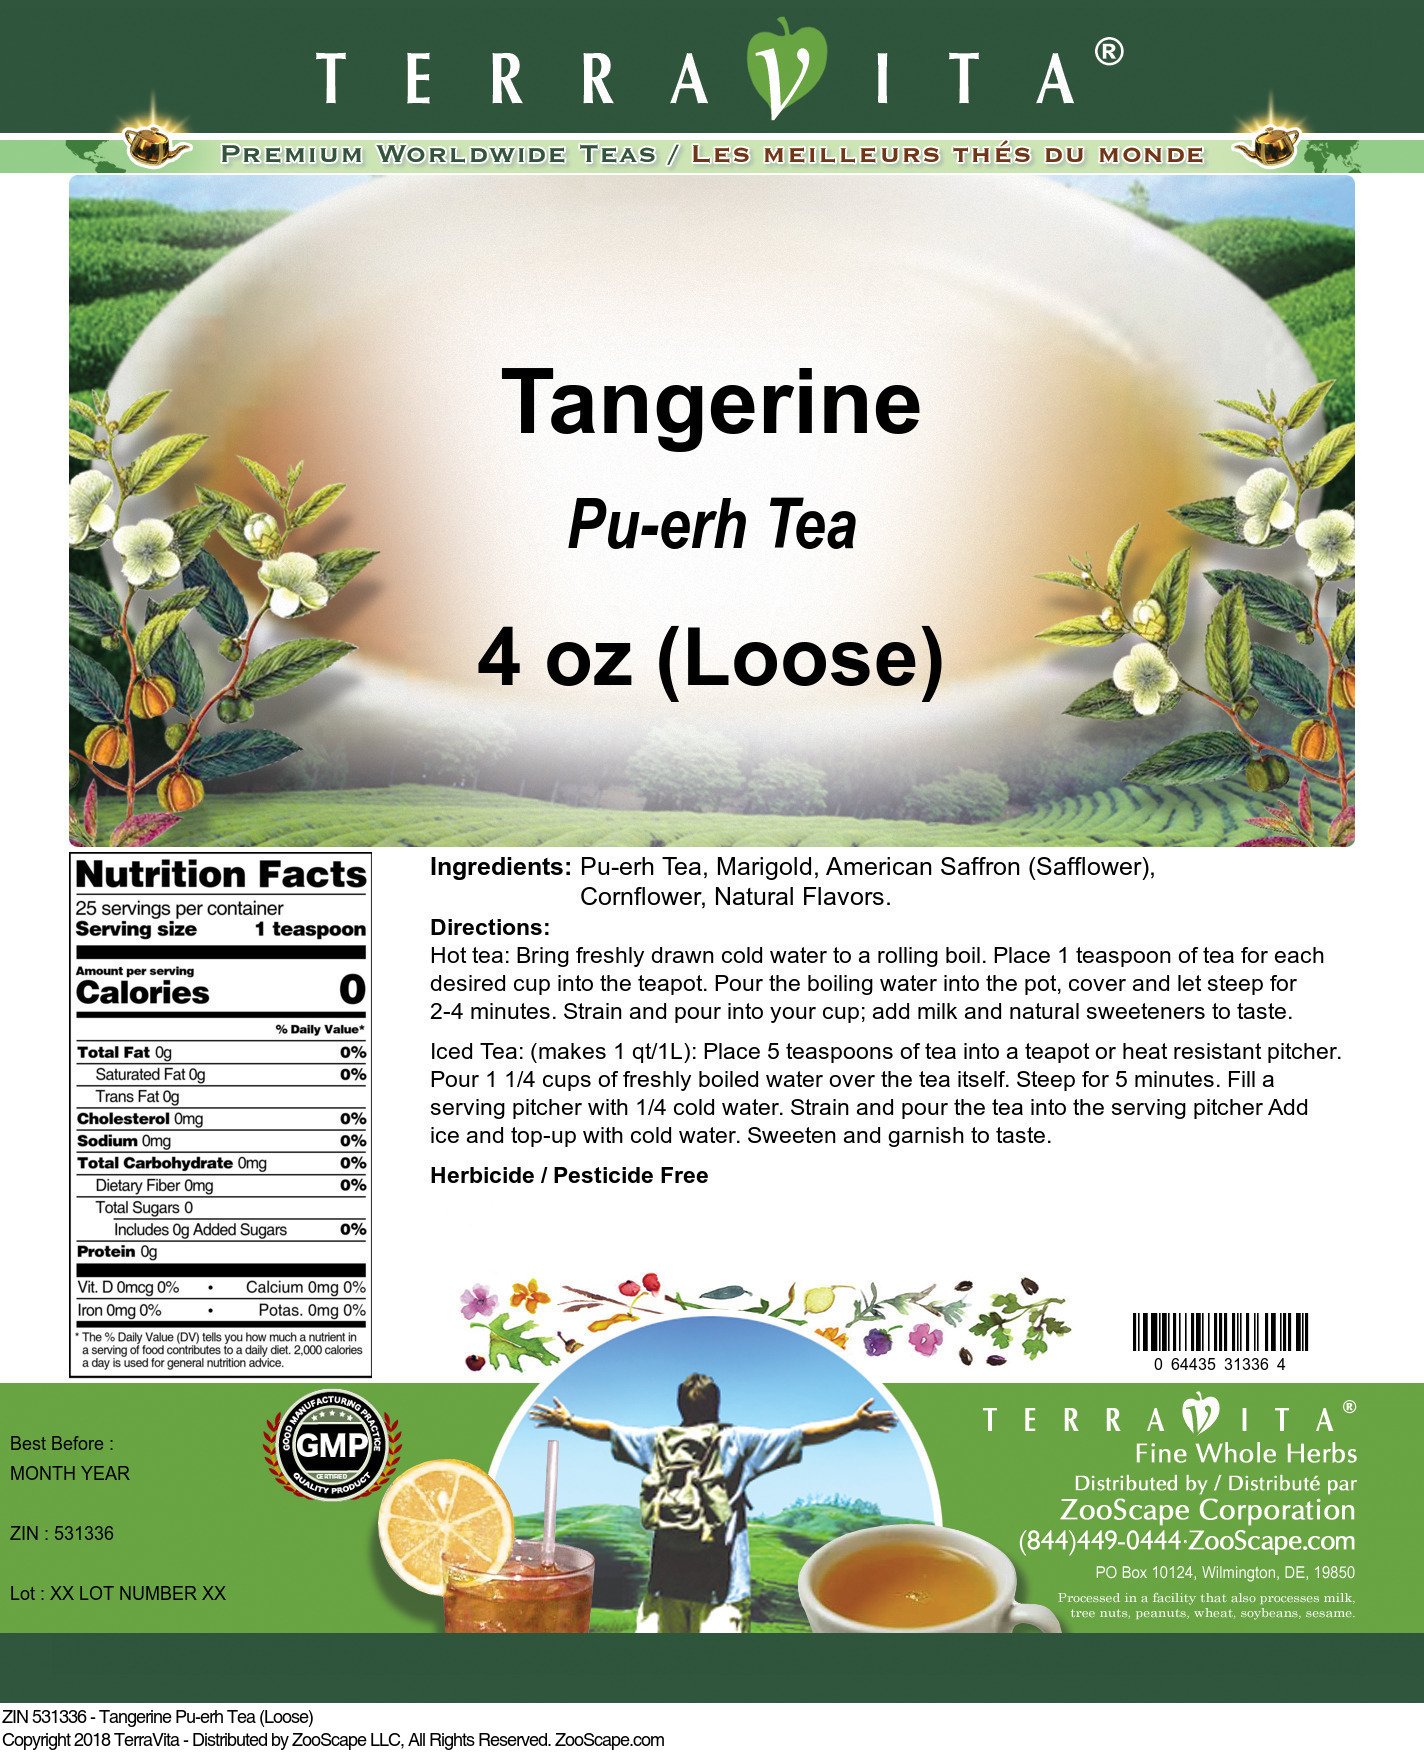 Tangerine Pu-erh Tea (Loose) - Label